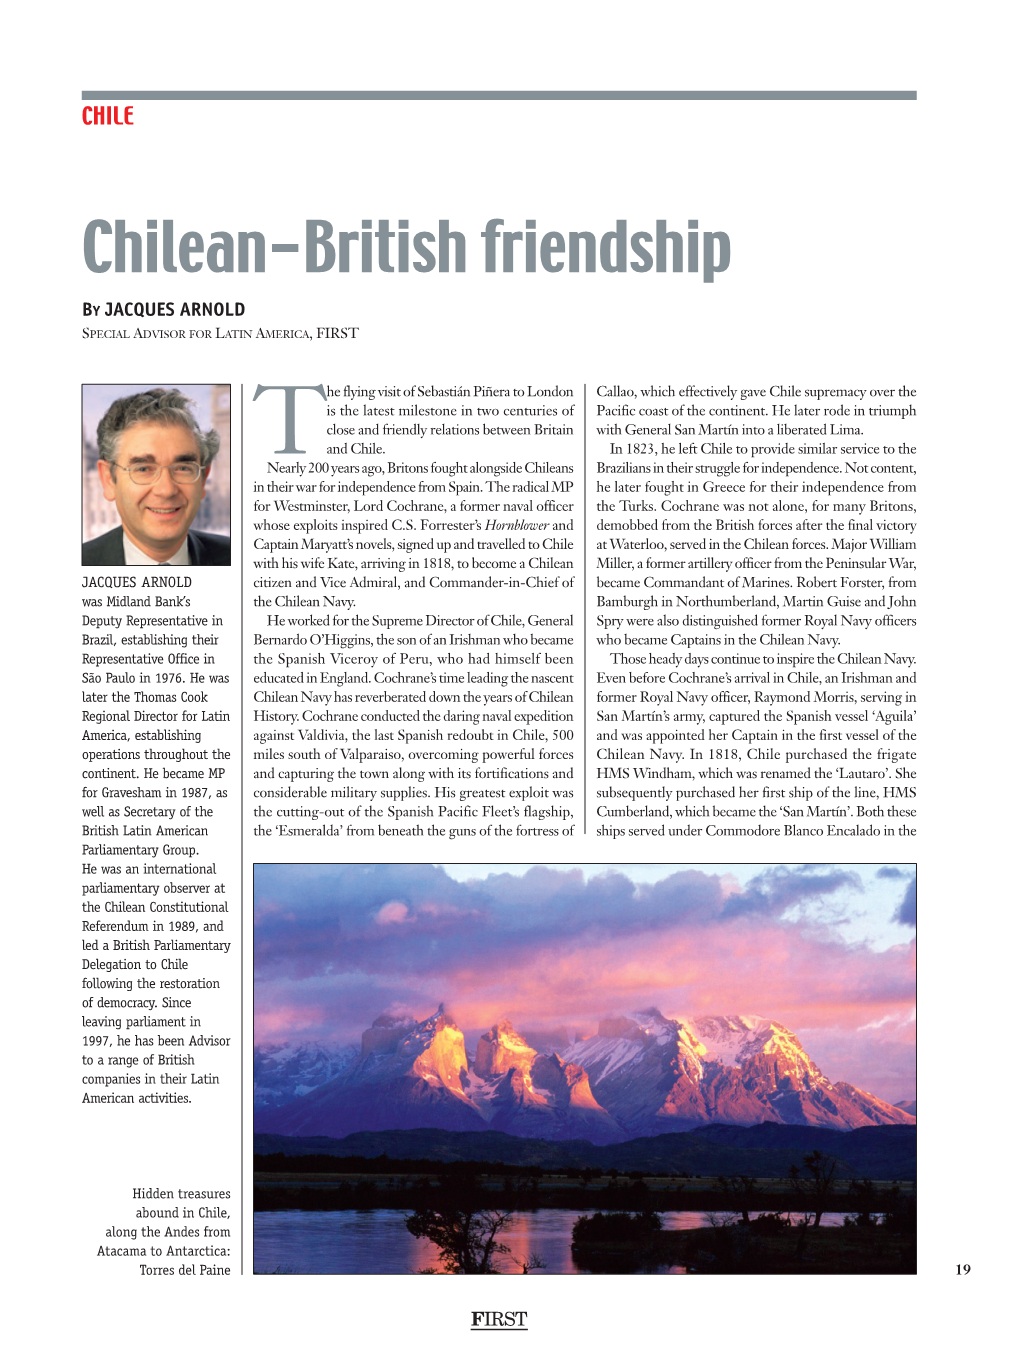 Chilean-British Friendship